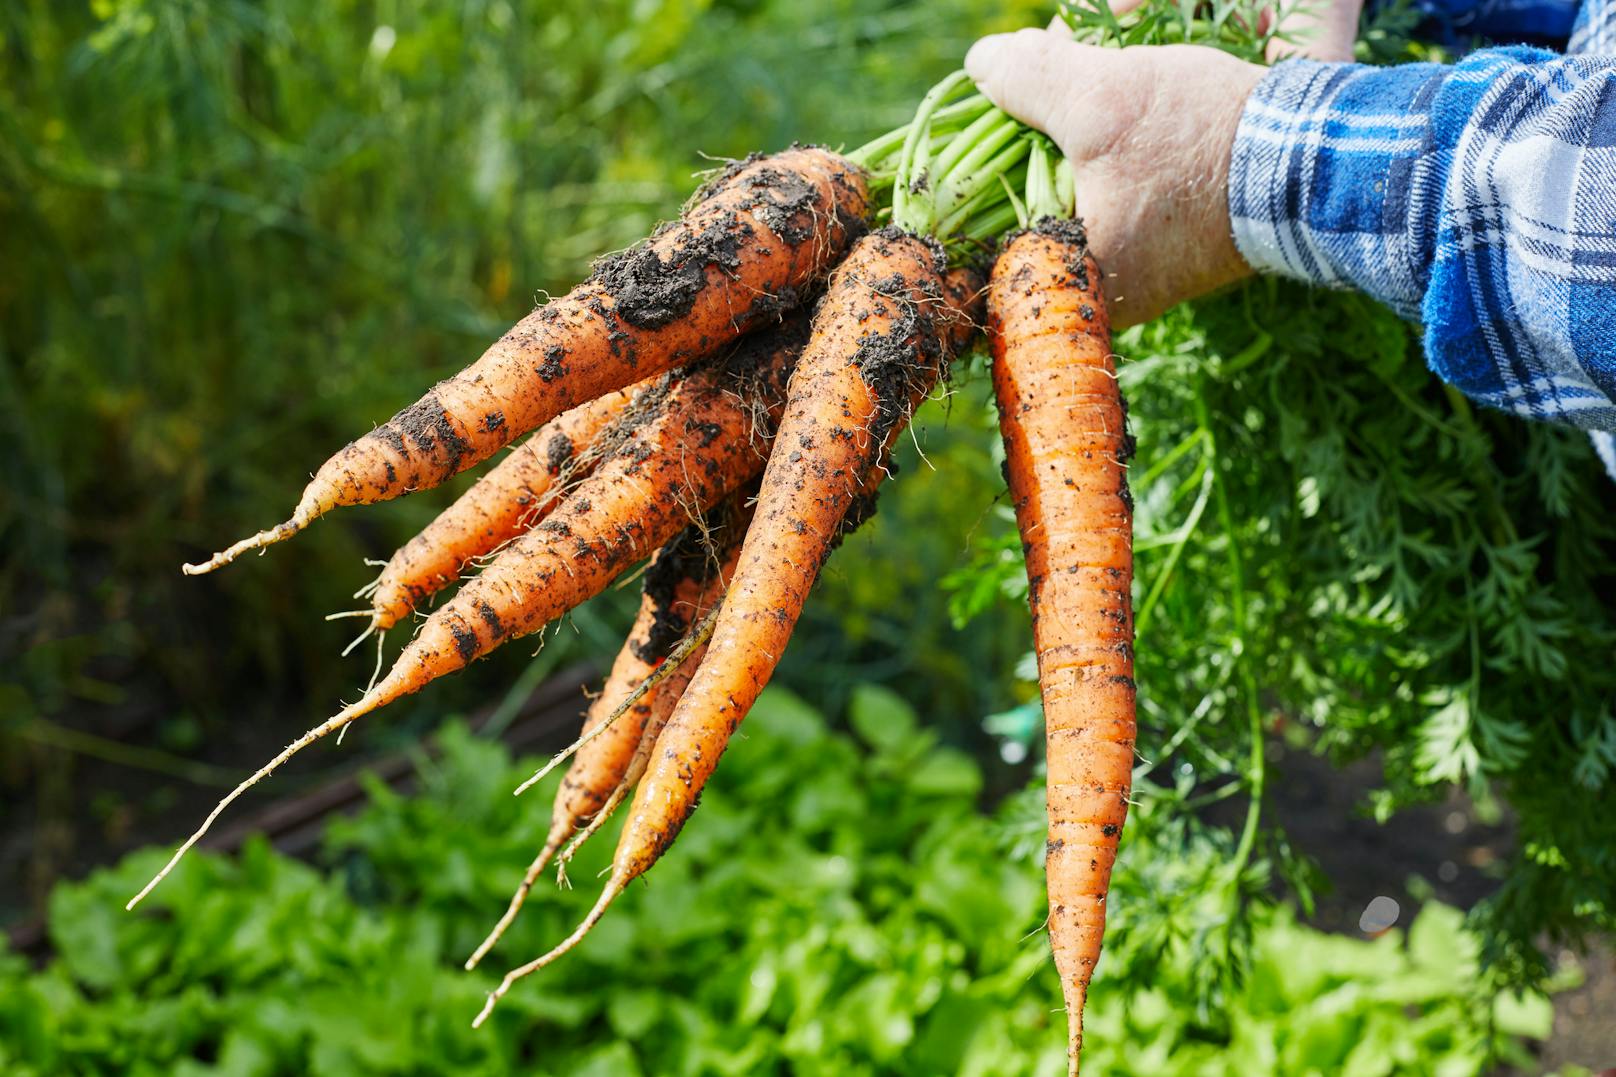 <strong>Karotten</strong>: Du möchtest gerne deine eigenen Karotten ziehen? Gar kein Problem! Schneide dazu den oberen Teil (der mit dem Grün) bei deiner Karotte ab. Nimm nicht zu wenig, 3 bis 5 Zentimeter braucht's schon. Dann legst du das Karottenstück in ein Glas warmes Wasser. Nach wenigen Tagen sollte das Grün wieder anfangen zu wachsen, dann kannst du die Karotte wieder einpflanzen. Nach zwei bis drei Wochen sollten sich Wurzeln gebildet haben.